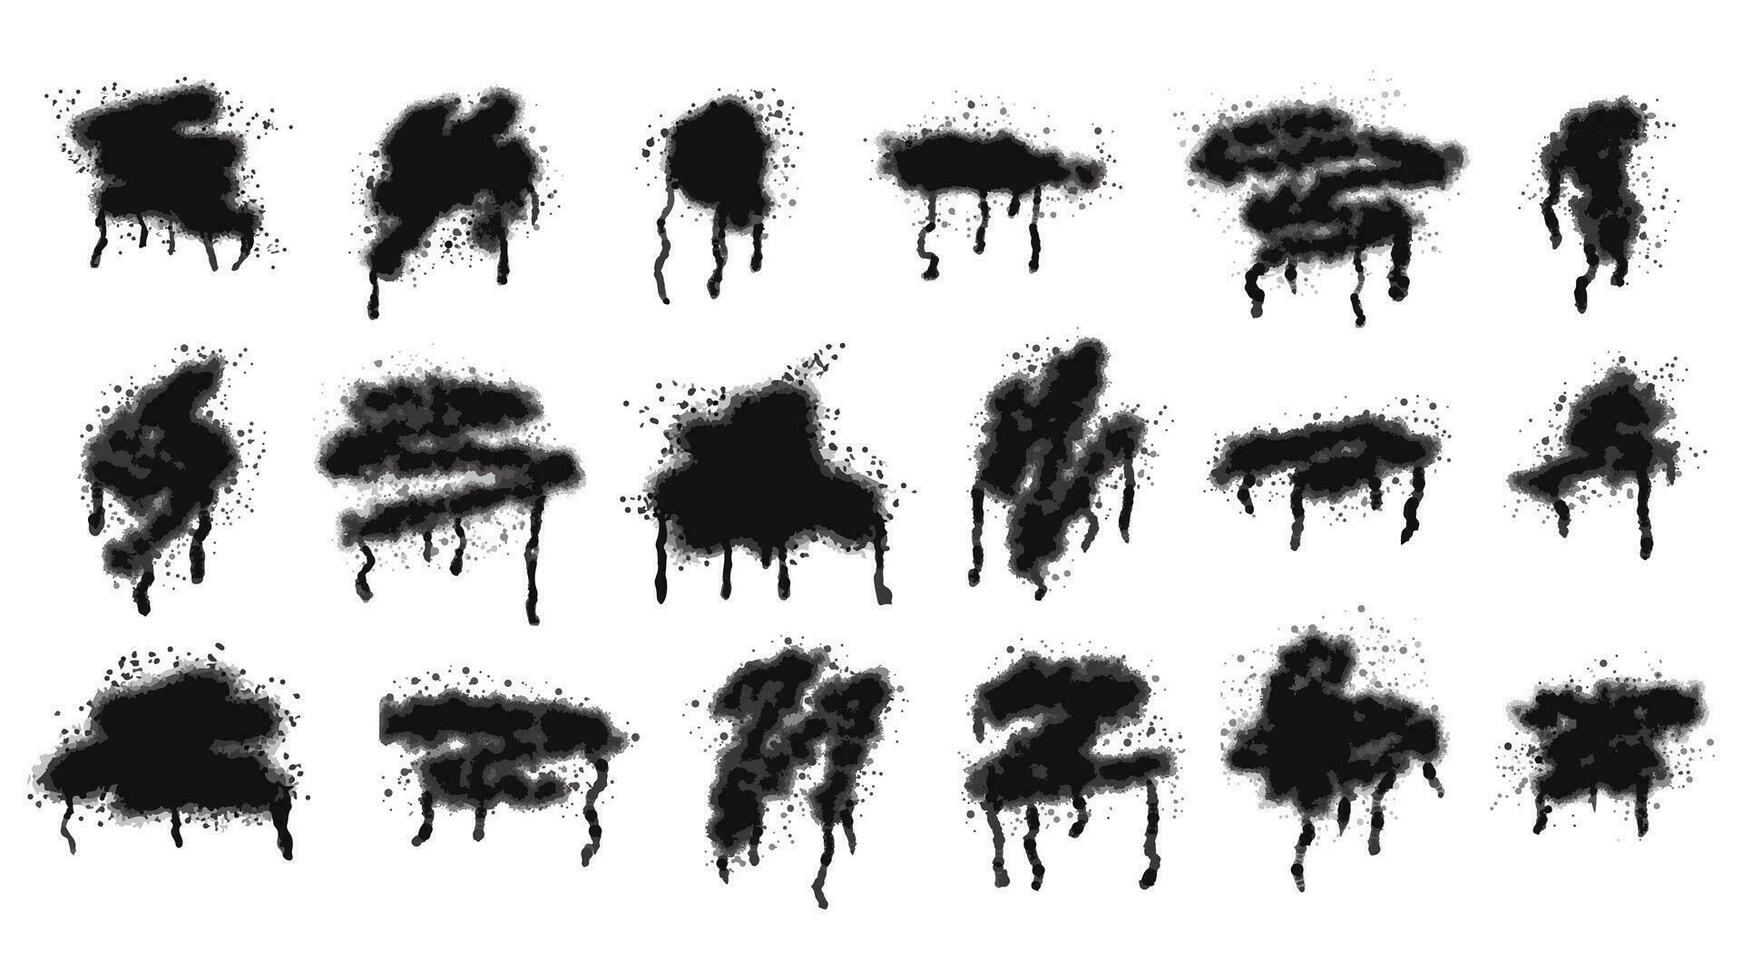 uppsättning av svart bläck fläckar målad med aerosol spray med droppar och fläckar. samling av graffiti, gata konst, stencil, mall. vektor isolerat på vit